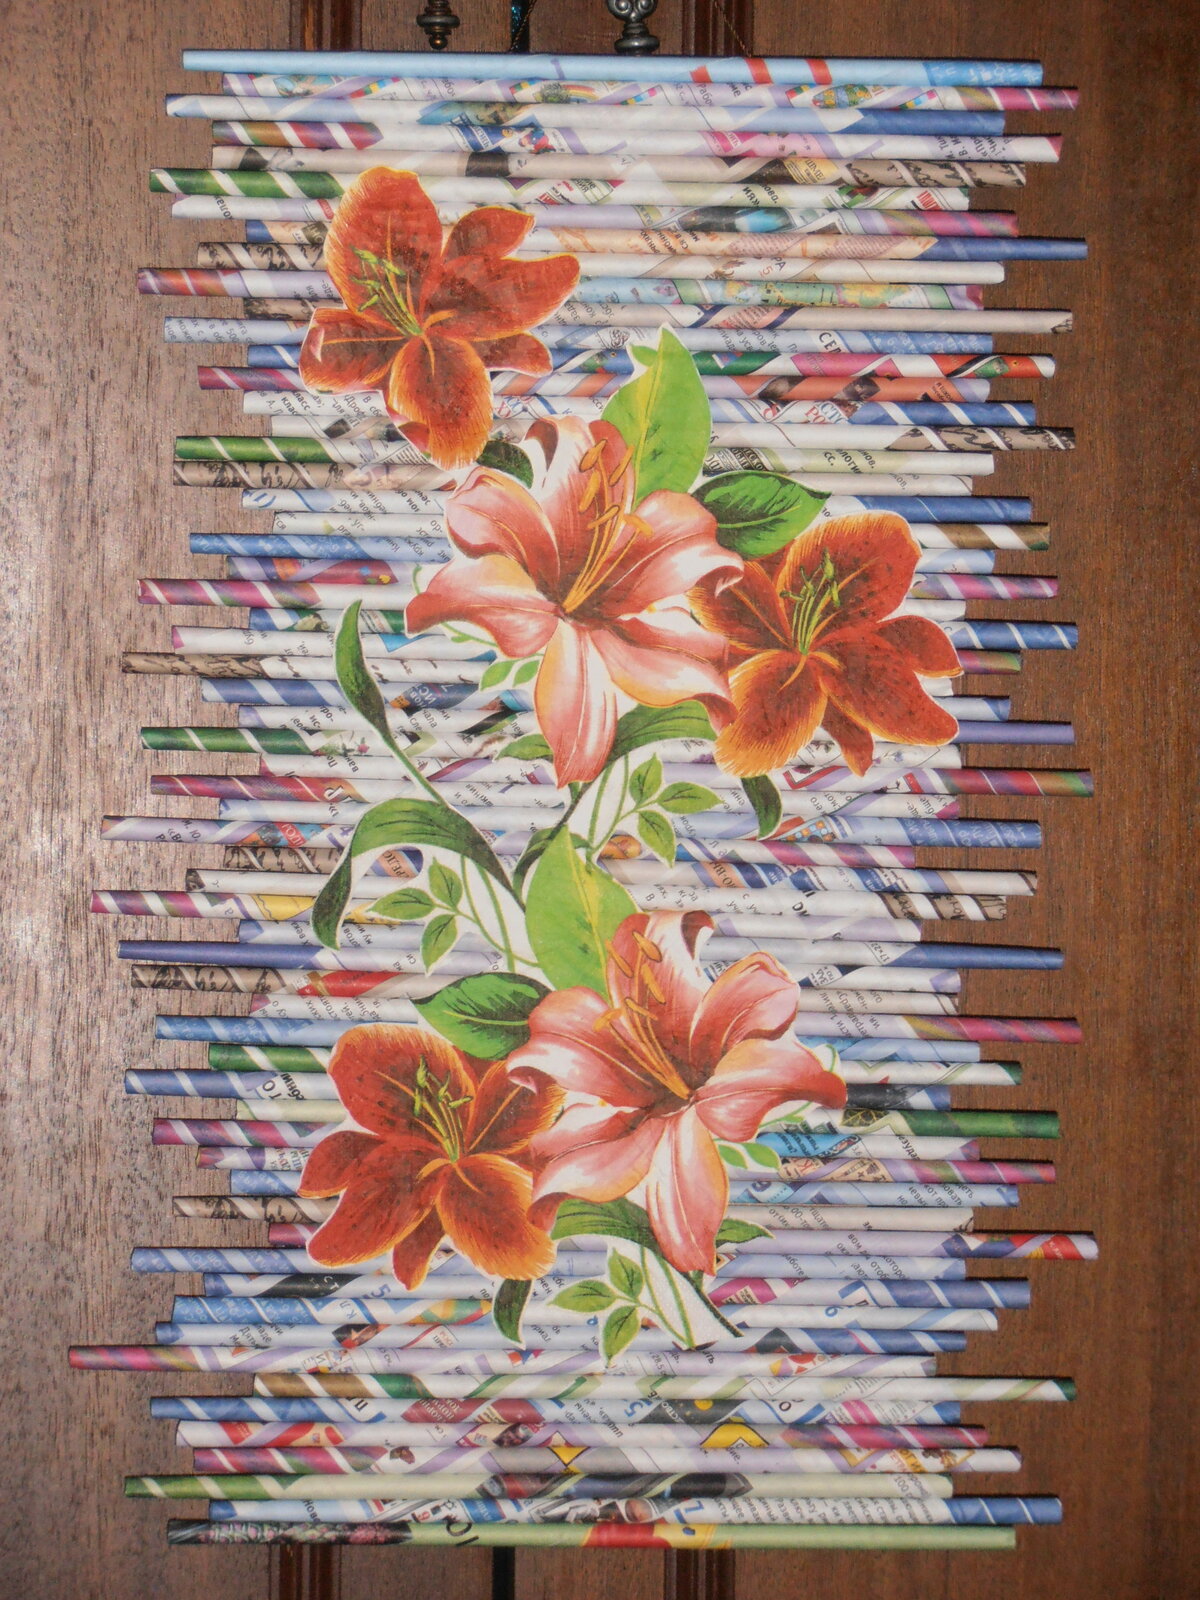 Картина панно рисунок плетение панно из бумажных трубочек бумага газетная